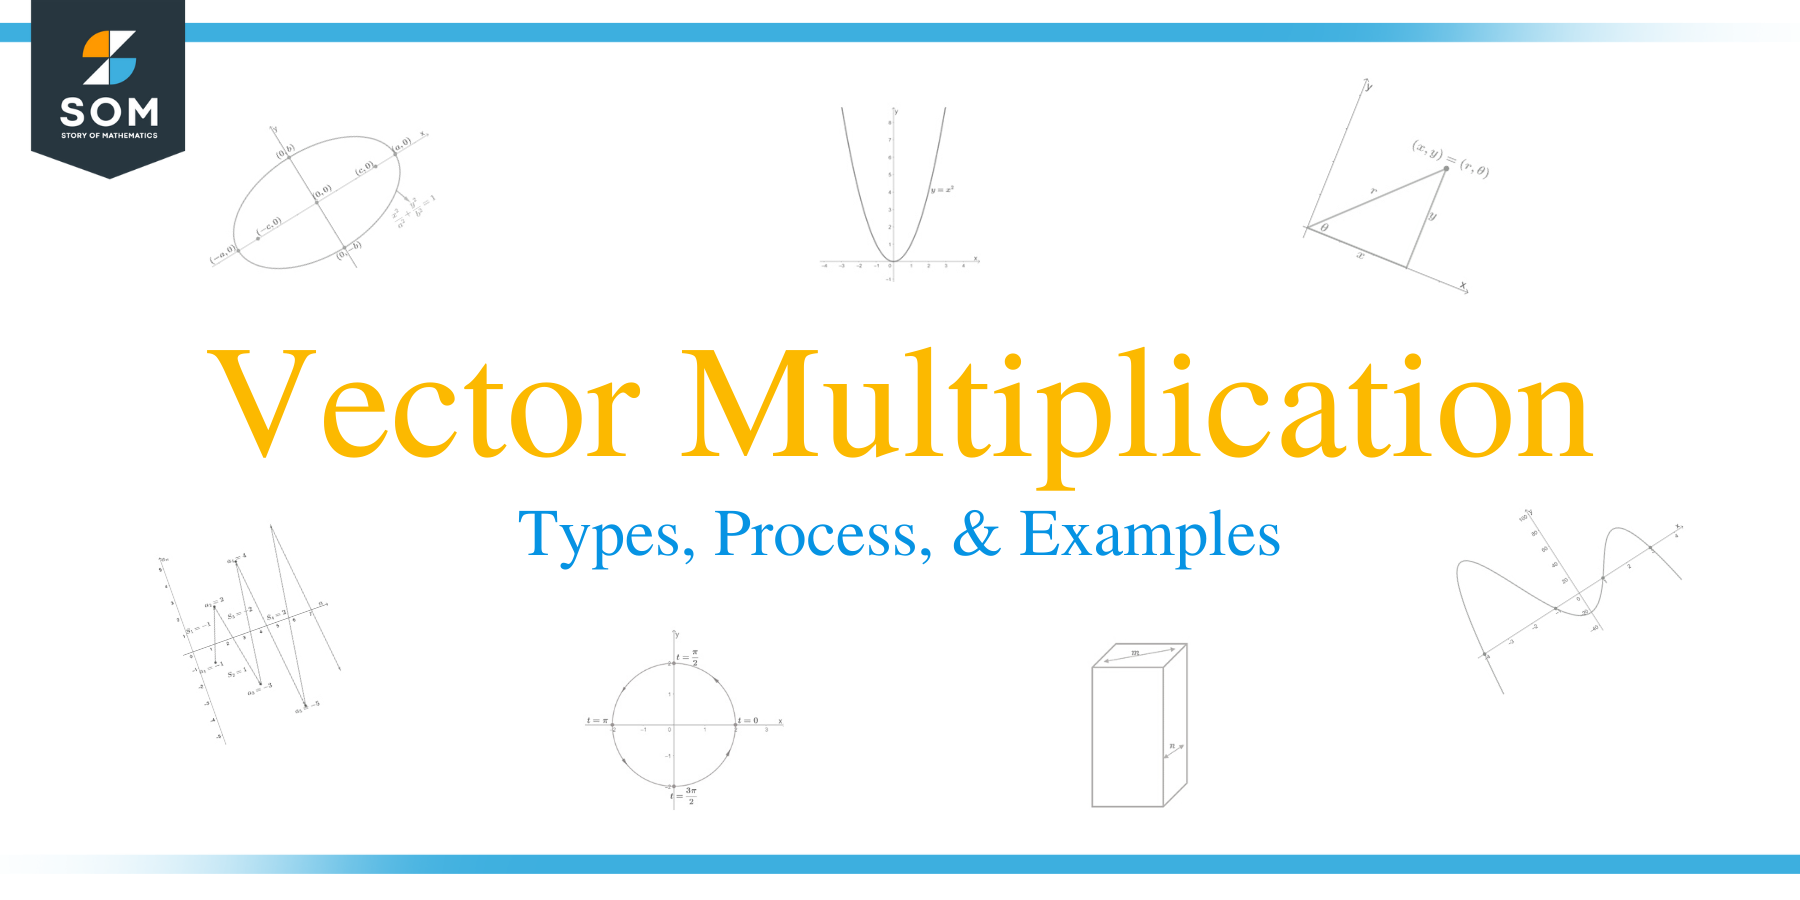 Vector multiplication